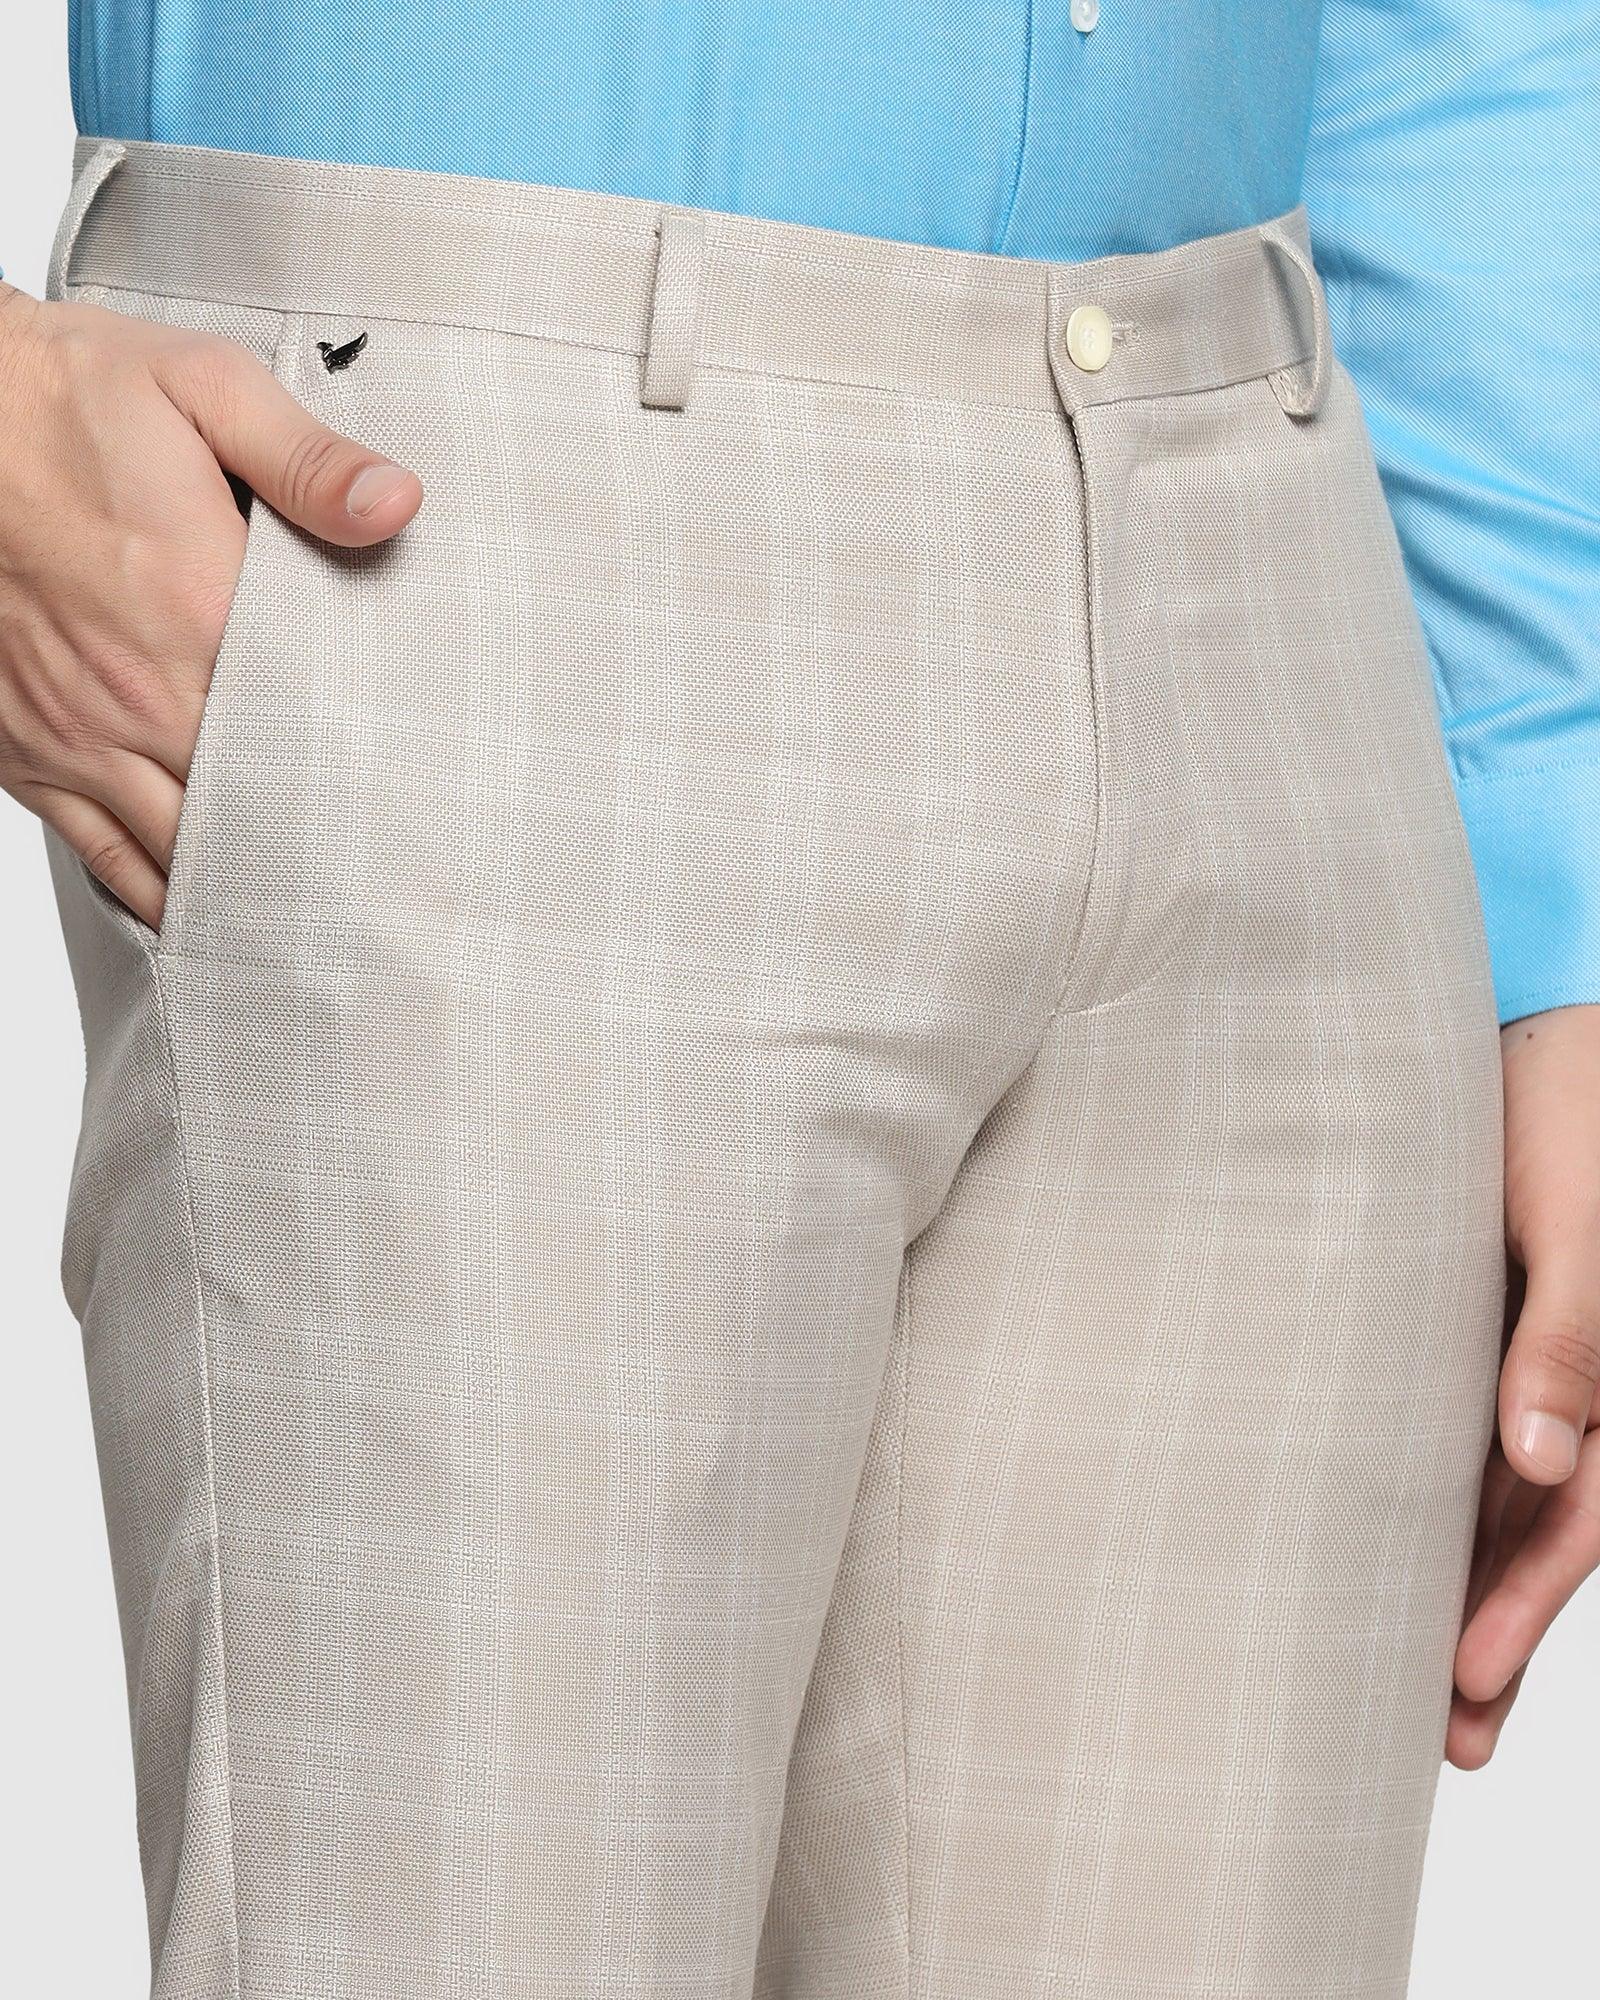 Linen Slim Comfort B-95 Formal Khaki Check Trouser - Walt